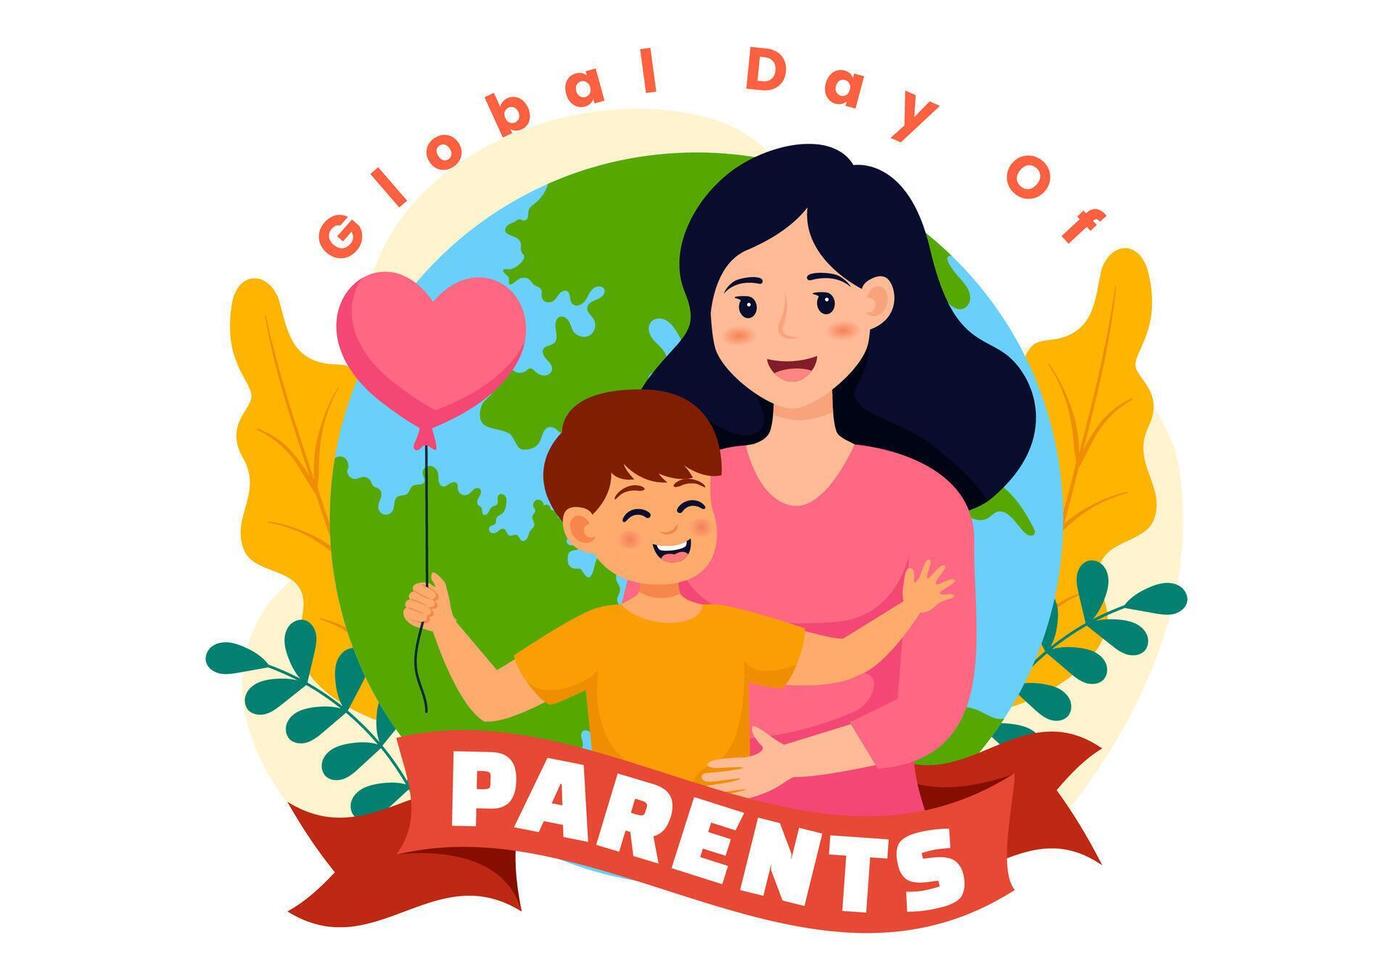 global Tag von Eltern Vektor Illustration mit Bedeutung von Sein ein Elternschaft mit Zusammengehörigkeit Mutter Vater Kinder Konzept im eben Hintergrund